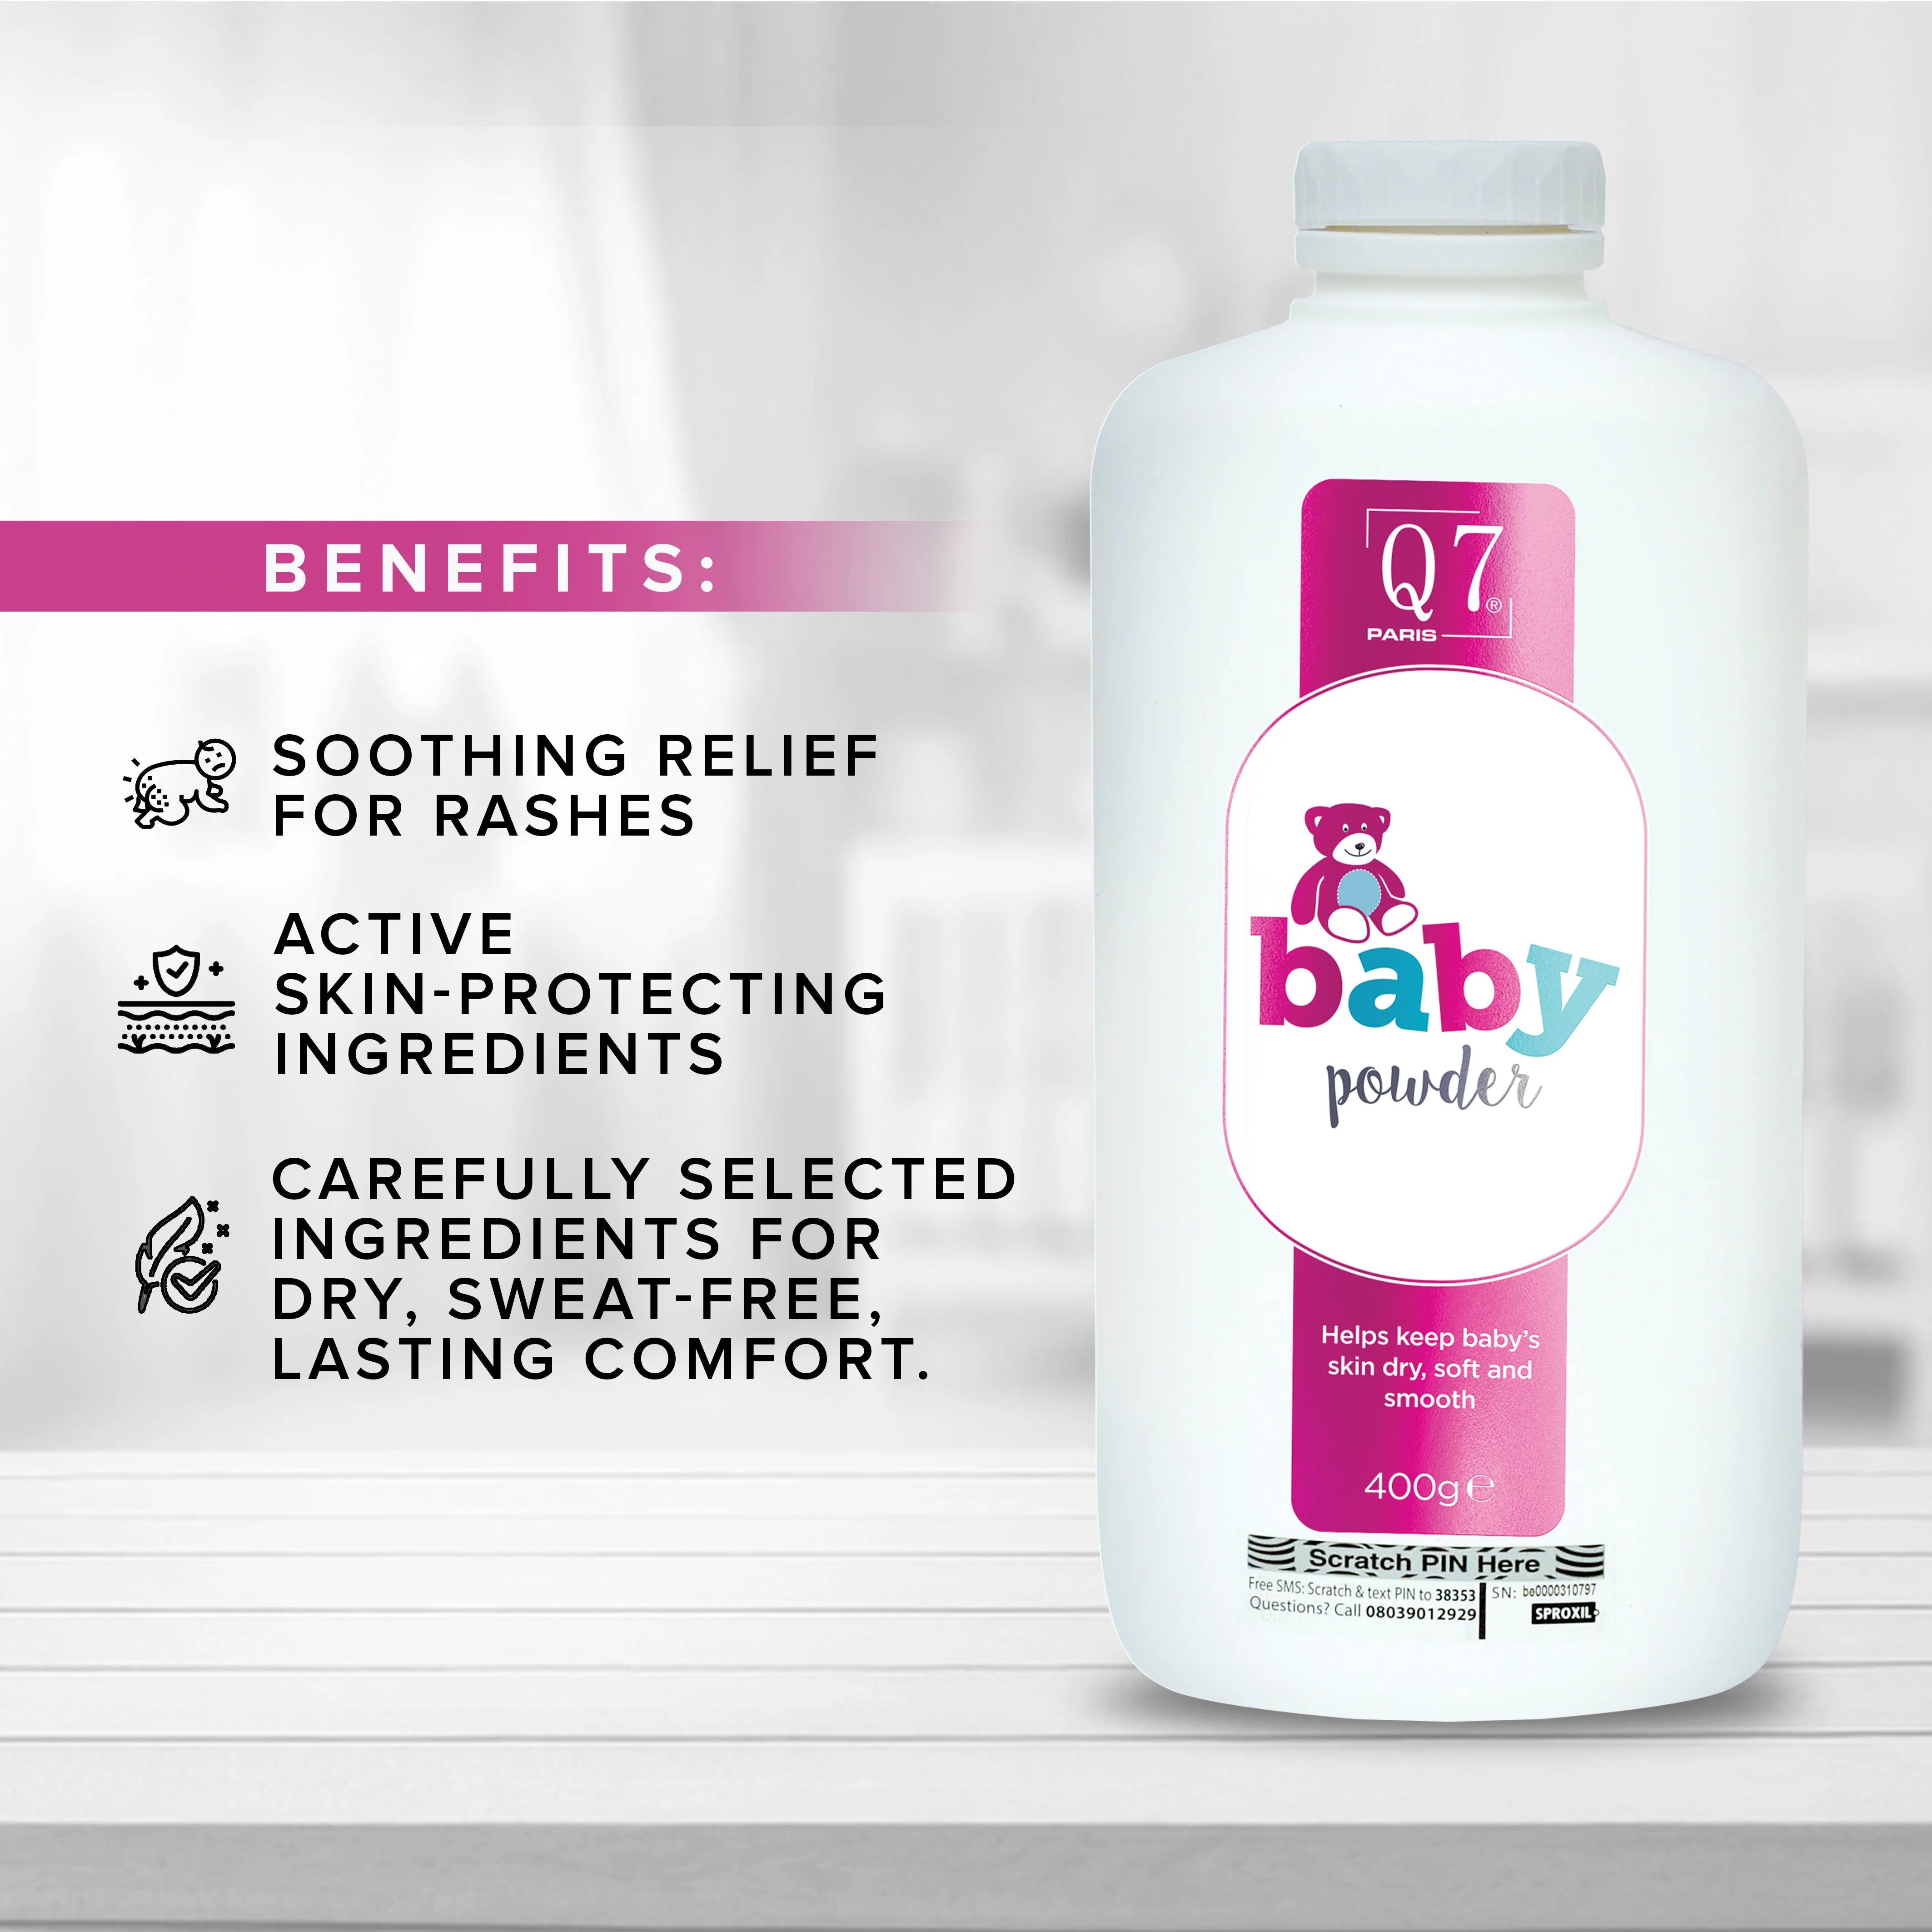 Q7Paris Baby Powder ('Baby Baby') - 400g